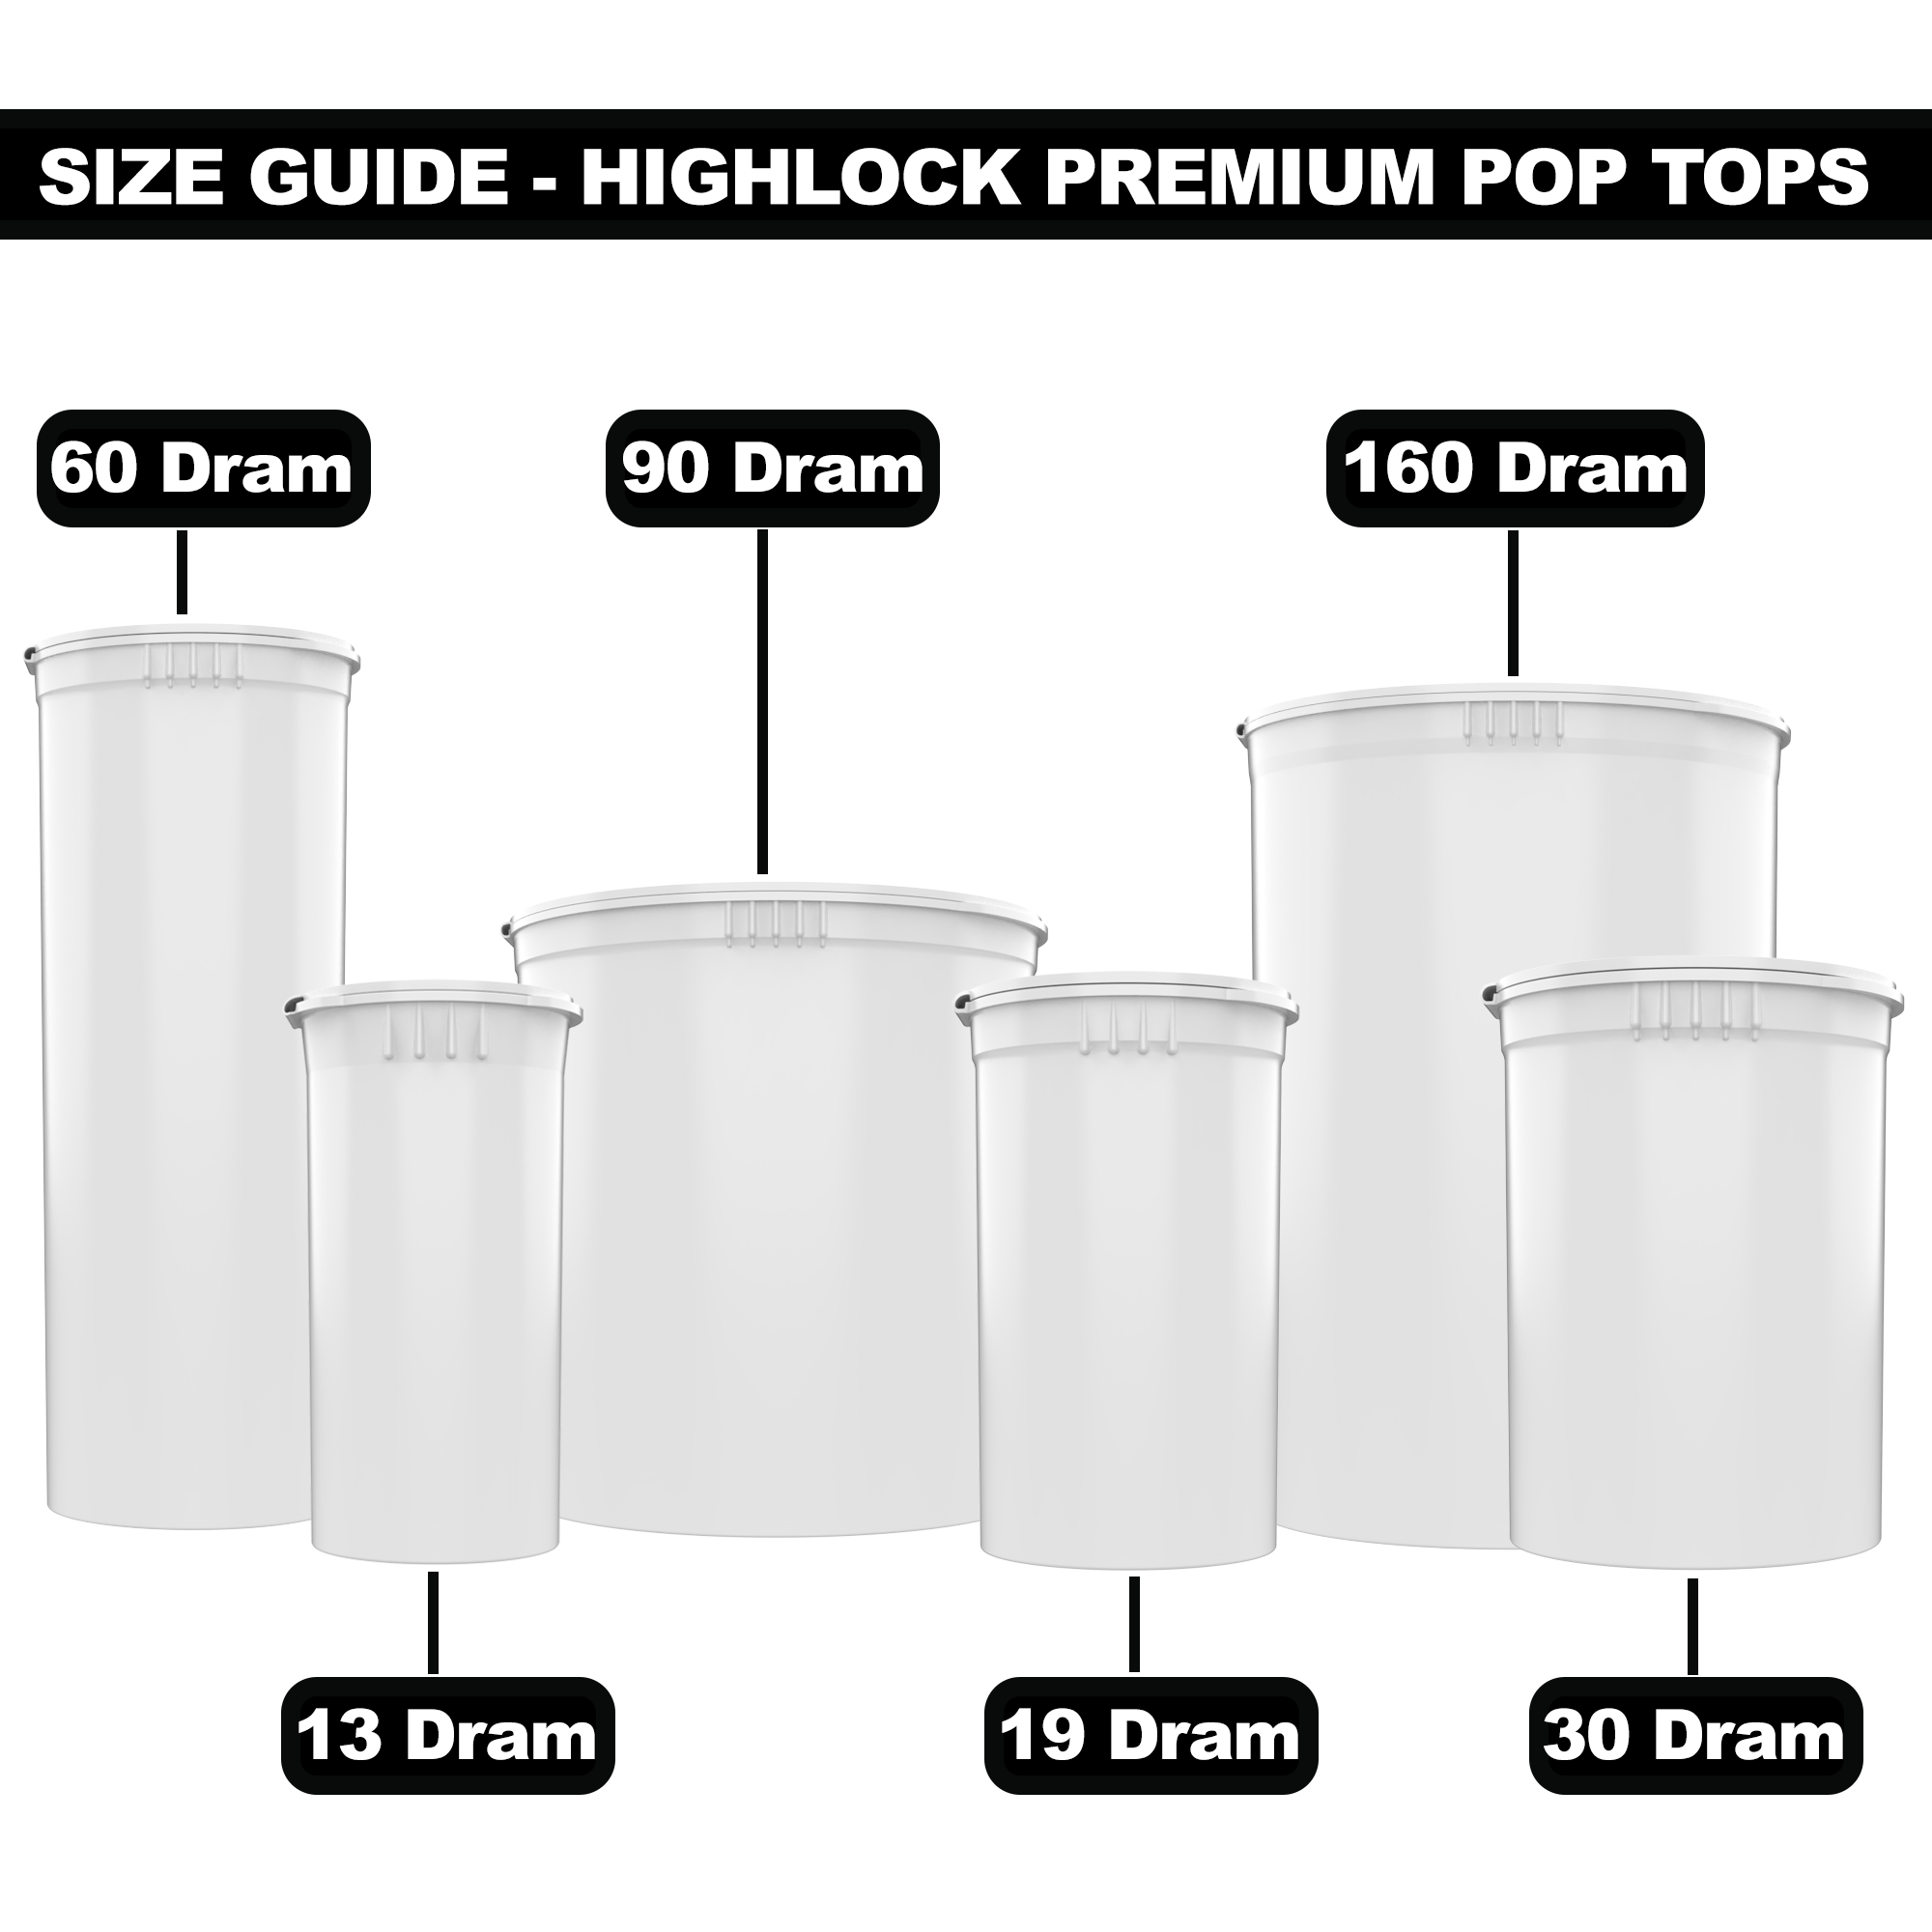 Custom Pop Top Container (60 Dram) (12025)